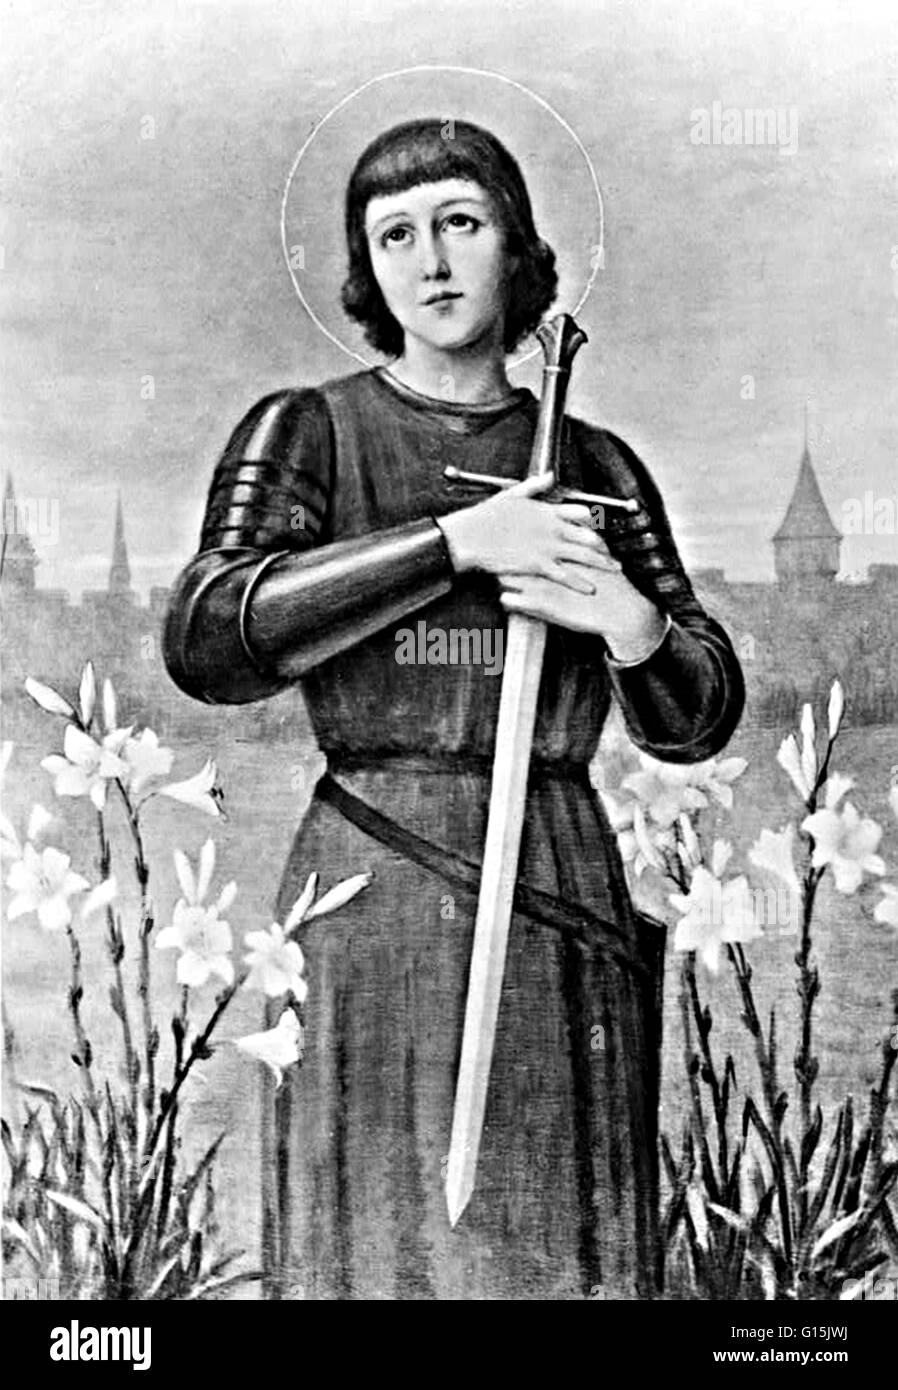 Joan of Arc serrant l'épée, artiste inconnu. Jeanne d'Arc (6 janvier 1412 - 30 mai 1431) Héroïne nationale de la France et un saint catholique. Un paysan né dans l'est de la France qui a déclaré la direction divine, elle a dirigé l'armée française à plusieurs importan Banque D'Images